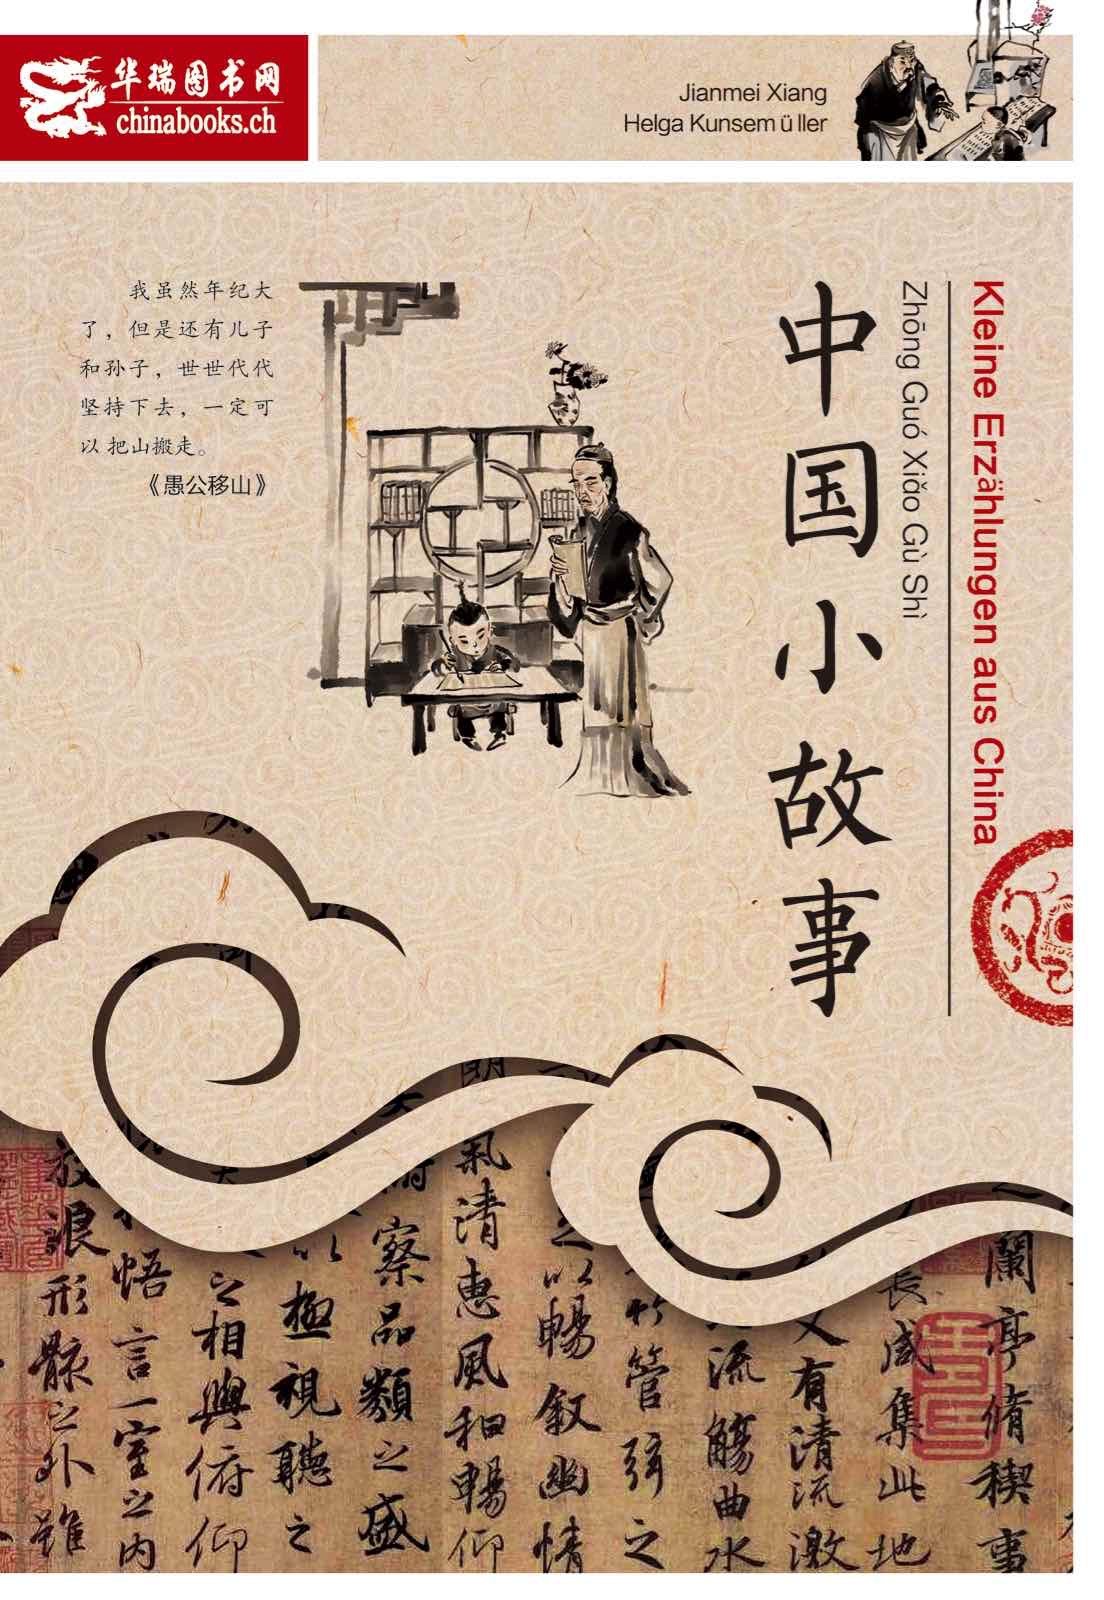 中国小故事 Kleine Erzählungen aus China - für Chinesischlernende (zweisprachig Chinesisch-Deutsch)<br>ISBN: 978-3-905816-70-9, 9783905816709